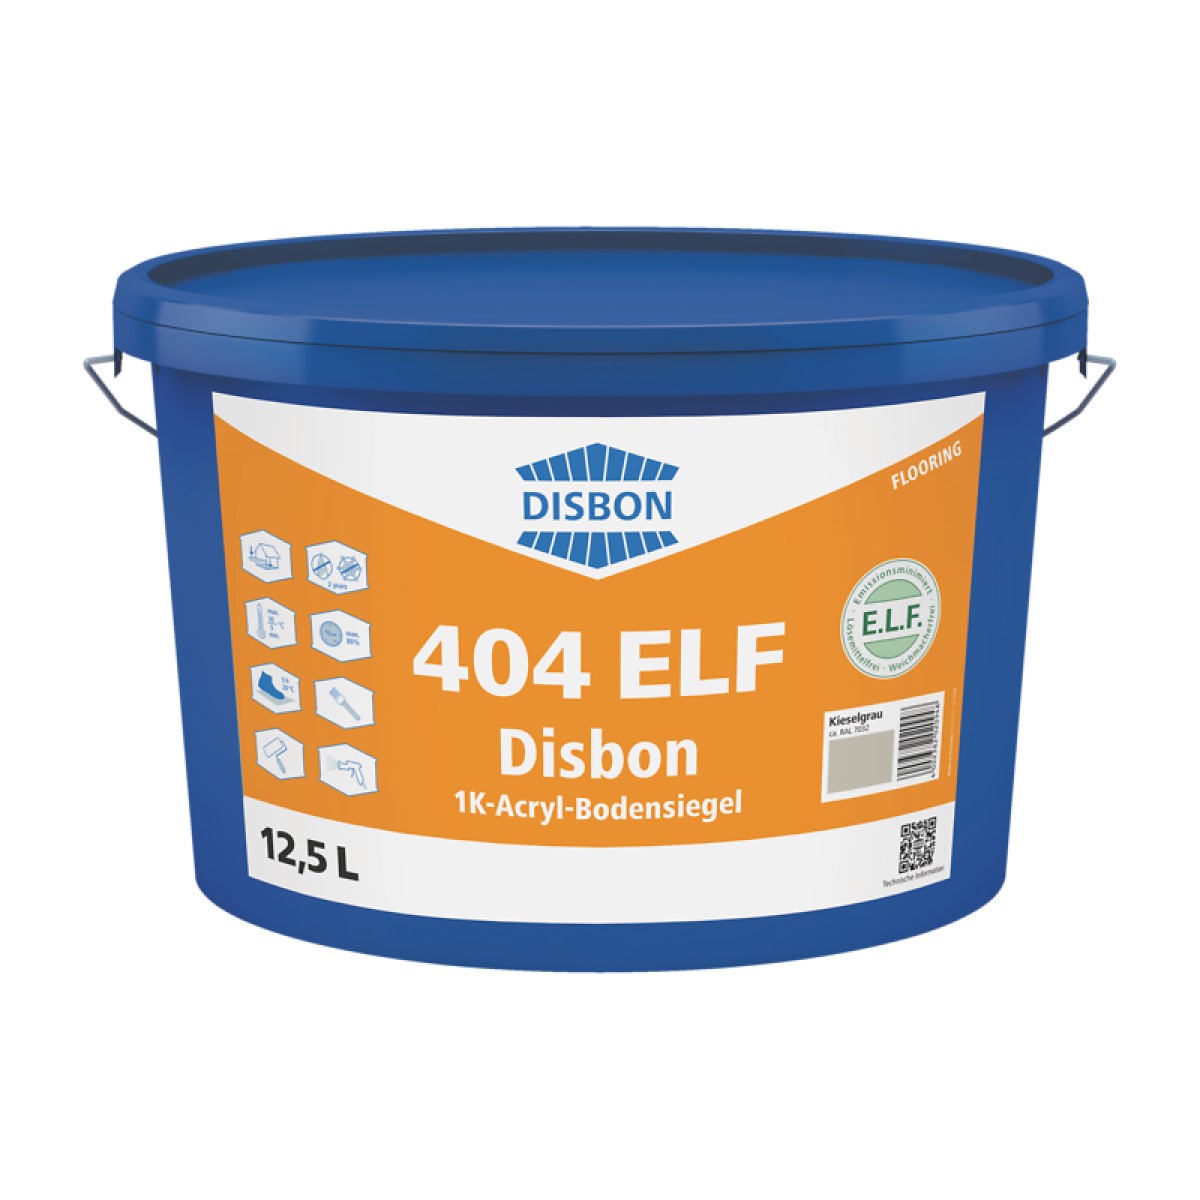 Disbon 404 ELF 1K-Acryl-Bodensiegel Zīdaini matēts aizsargklājums minerālām grīdu virsmām